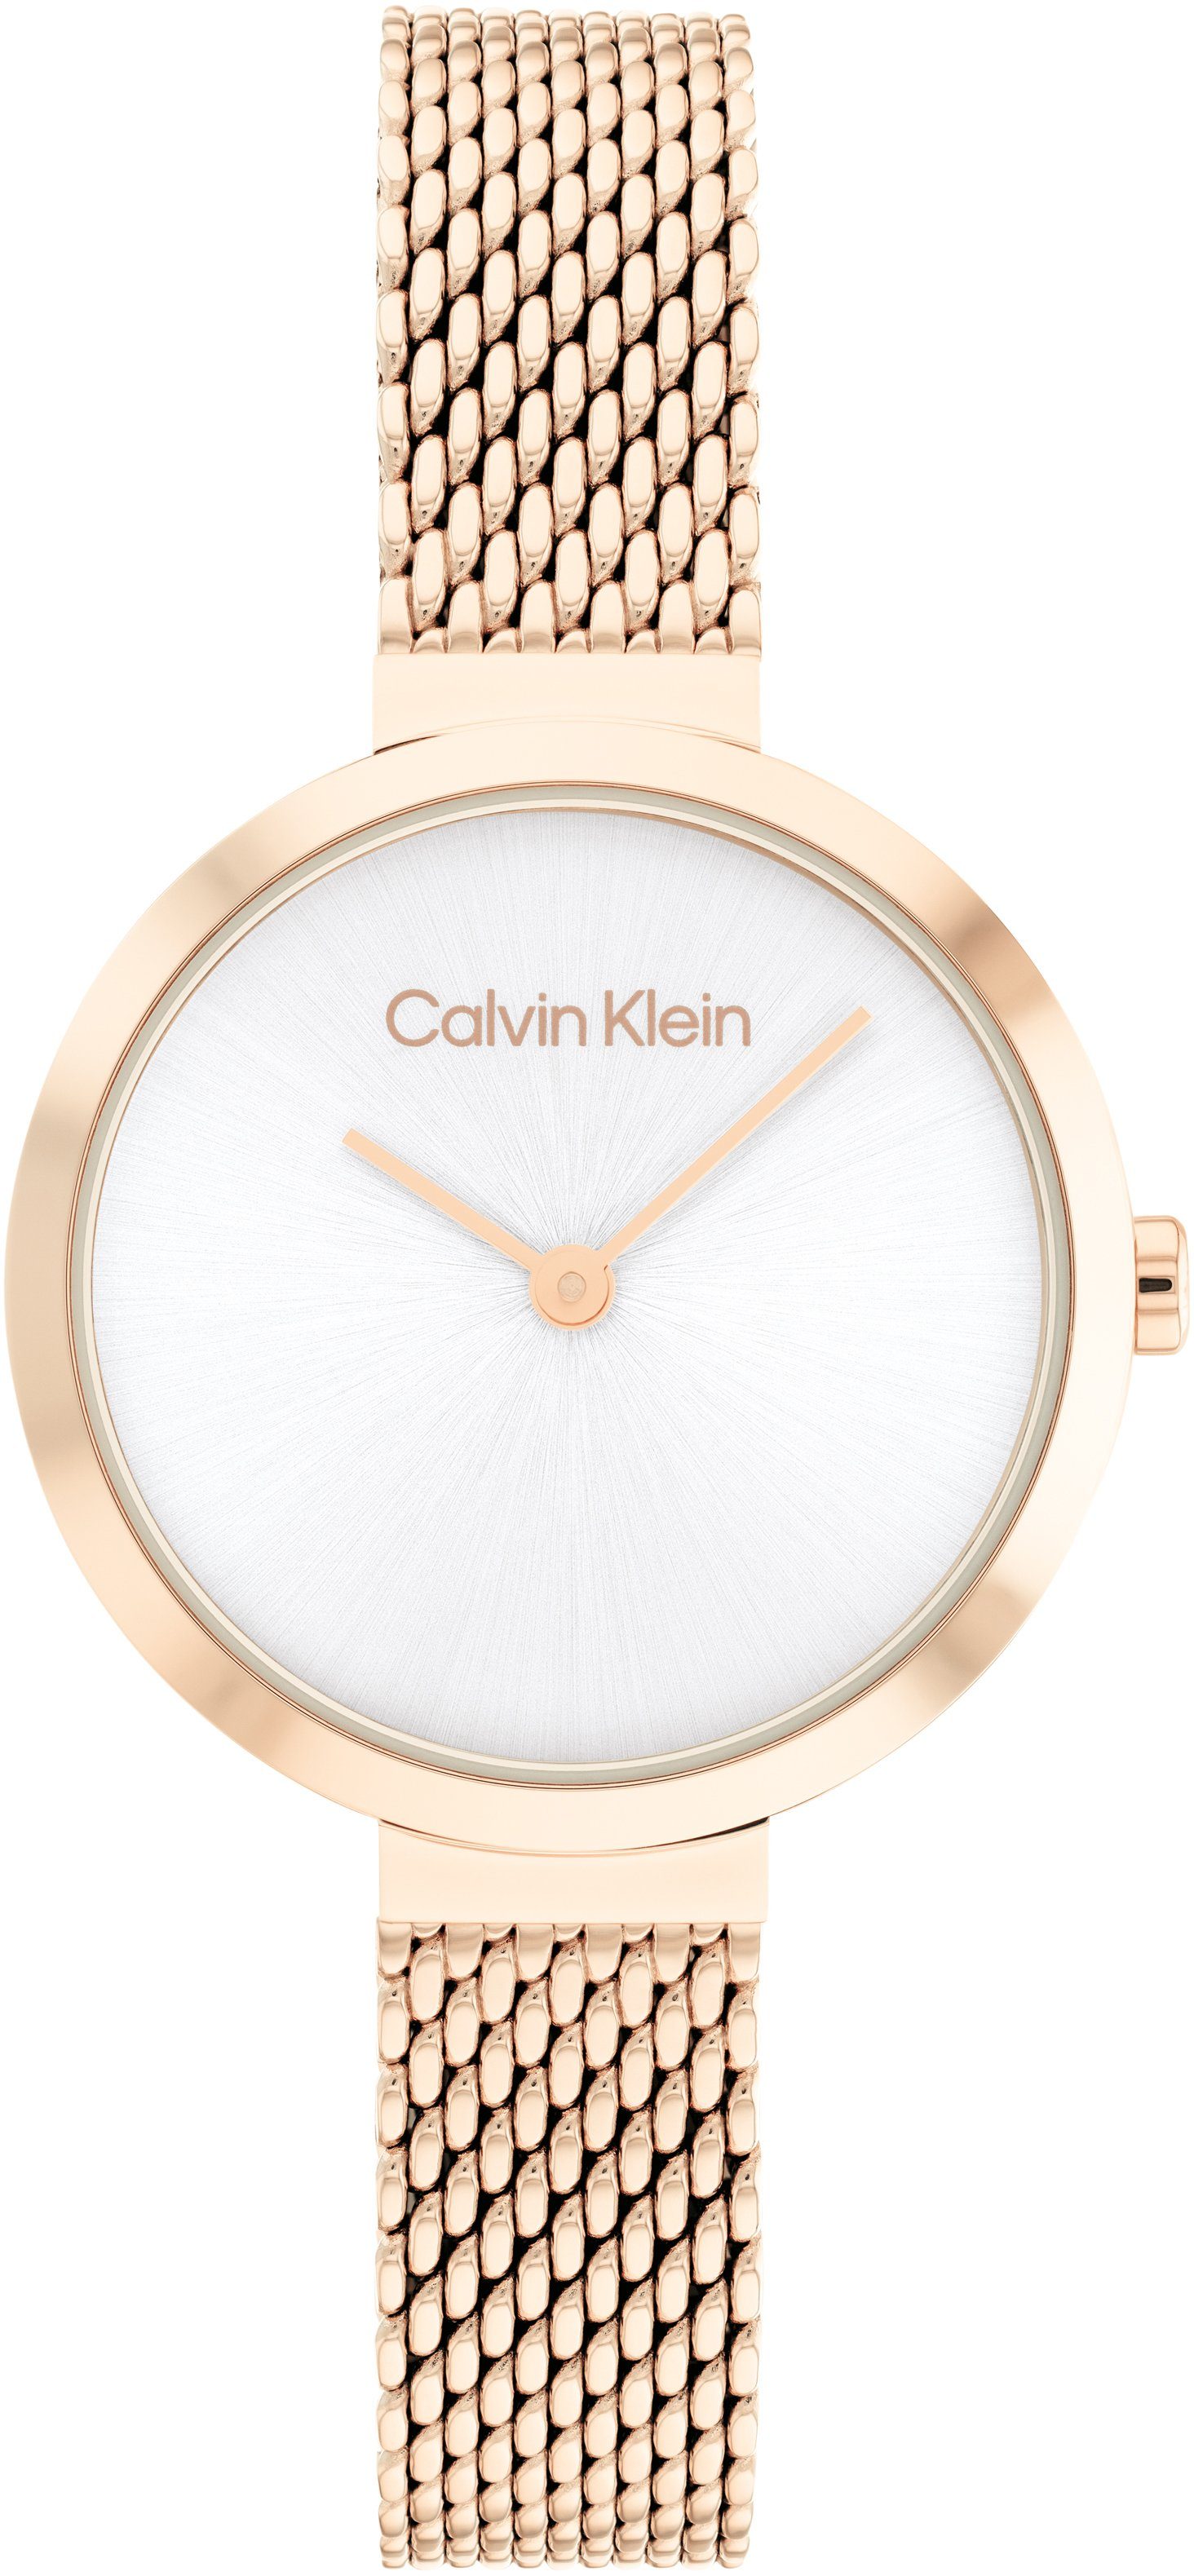 Calvin Klein Quarzuhr Minimalistic T Bar Mesh 28 mm, 25200083, Armbanduhr, Damenuhr, Mineralglas, IP-Beschichtung